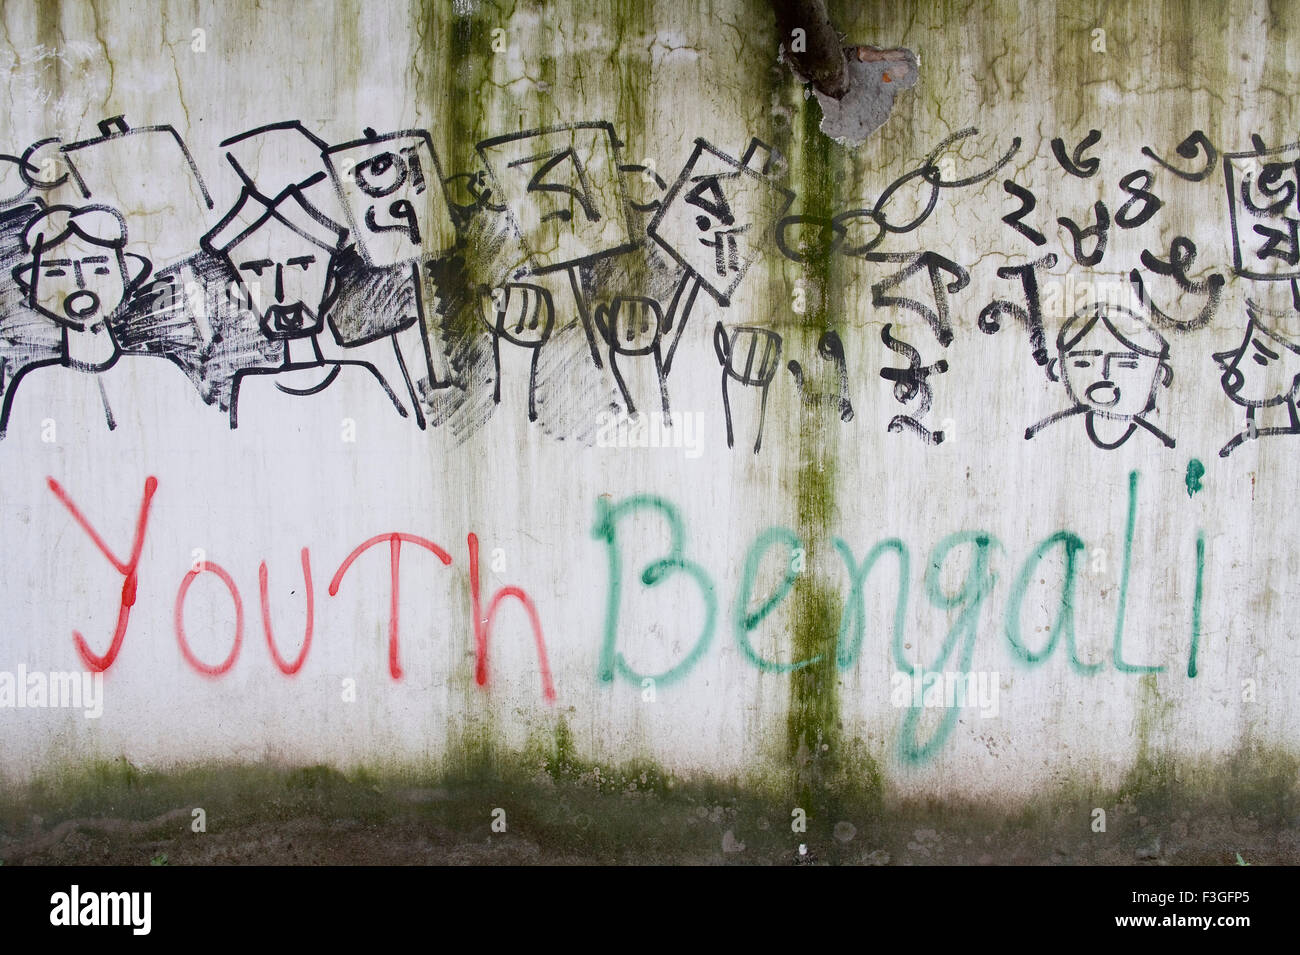 Les jeunes Bengali' écrit sur le mur avec des dessins de manifestation politique ; Dhaka Bangladesh ; Banque D'Images